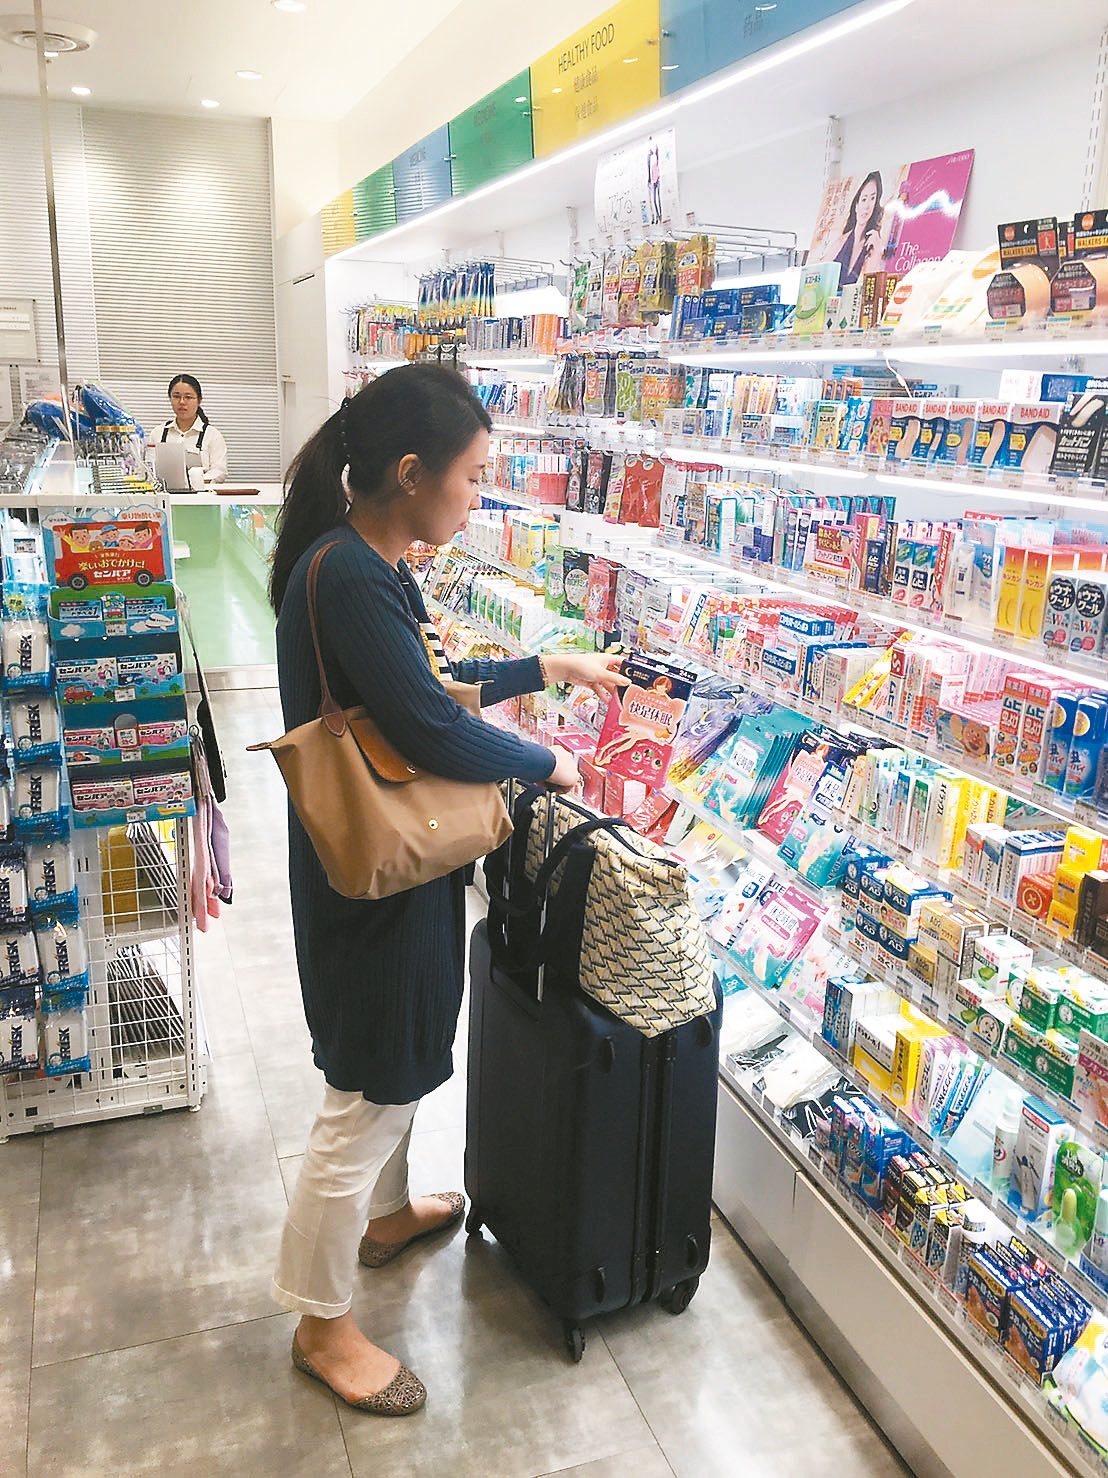 新聞都報導過，台灣人常去日本藥局買的那些必敗藥品保健品，日本當地人根本沒有在使用的呀！